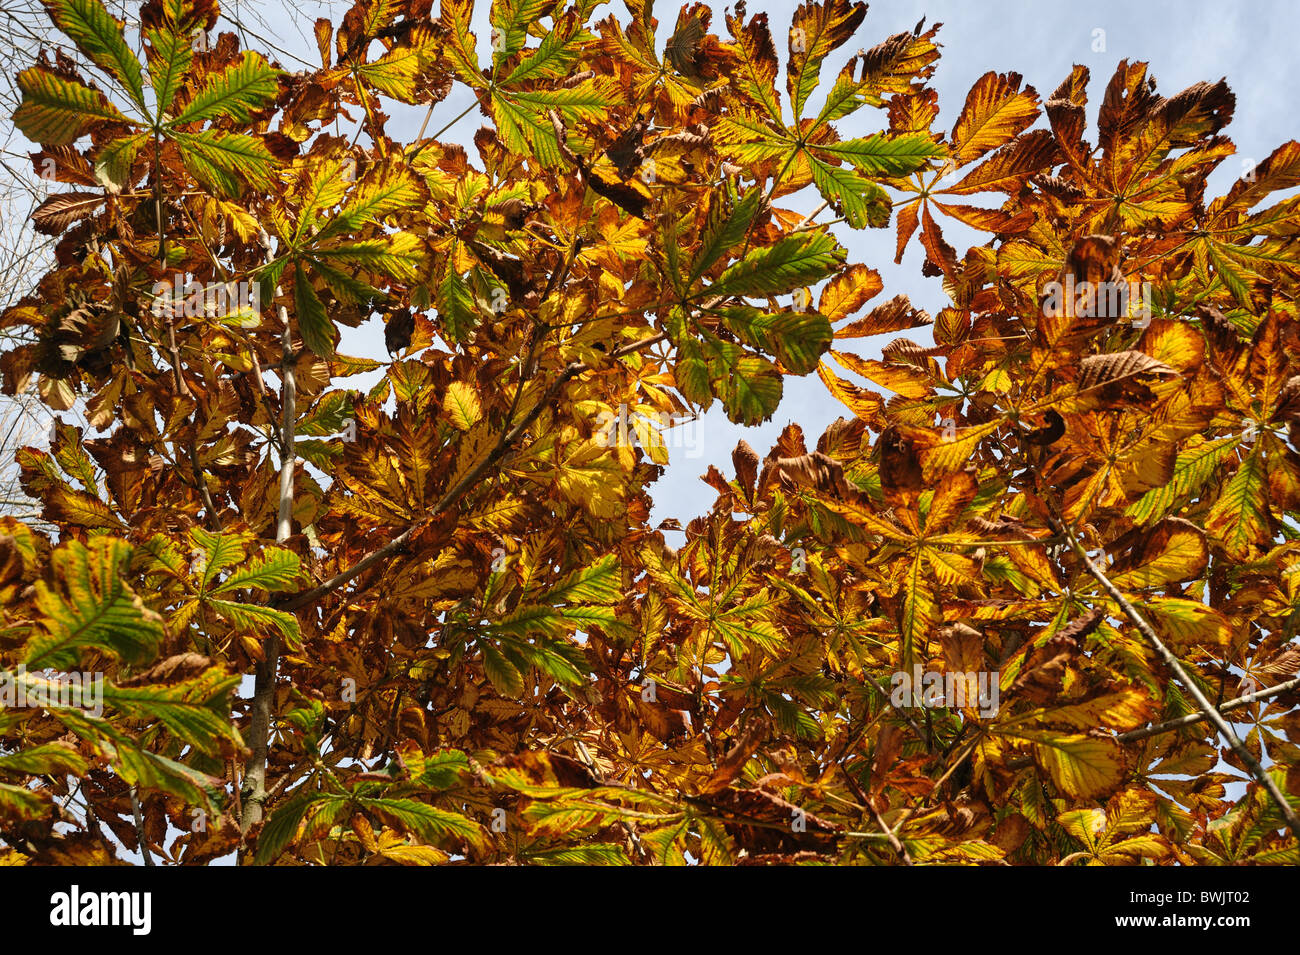 Junge Rosskastanie (Aesculus Hippocastanum) Baum Laub Blätter in volle Herbstfärbung Stockfoto